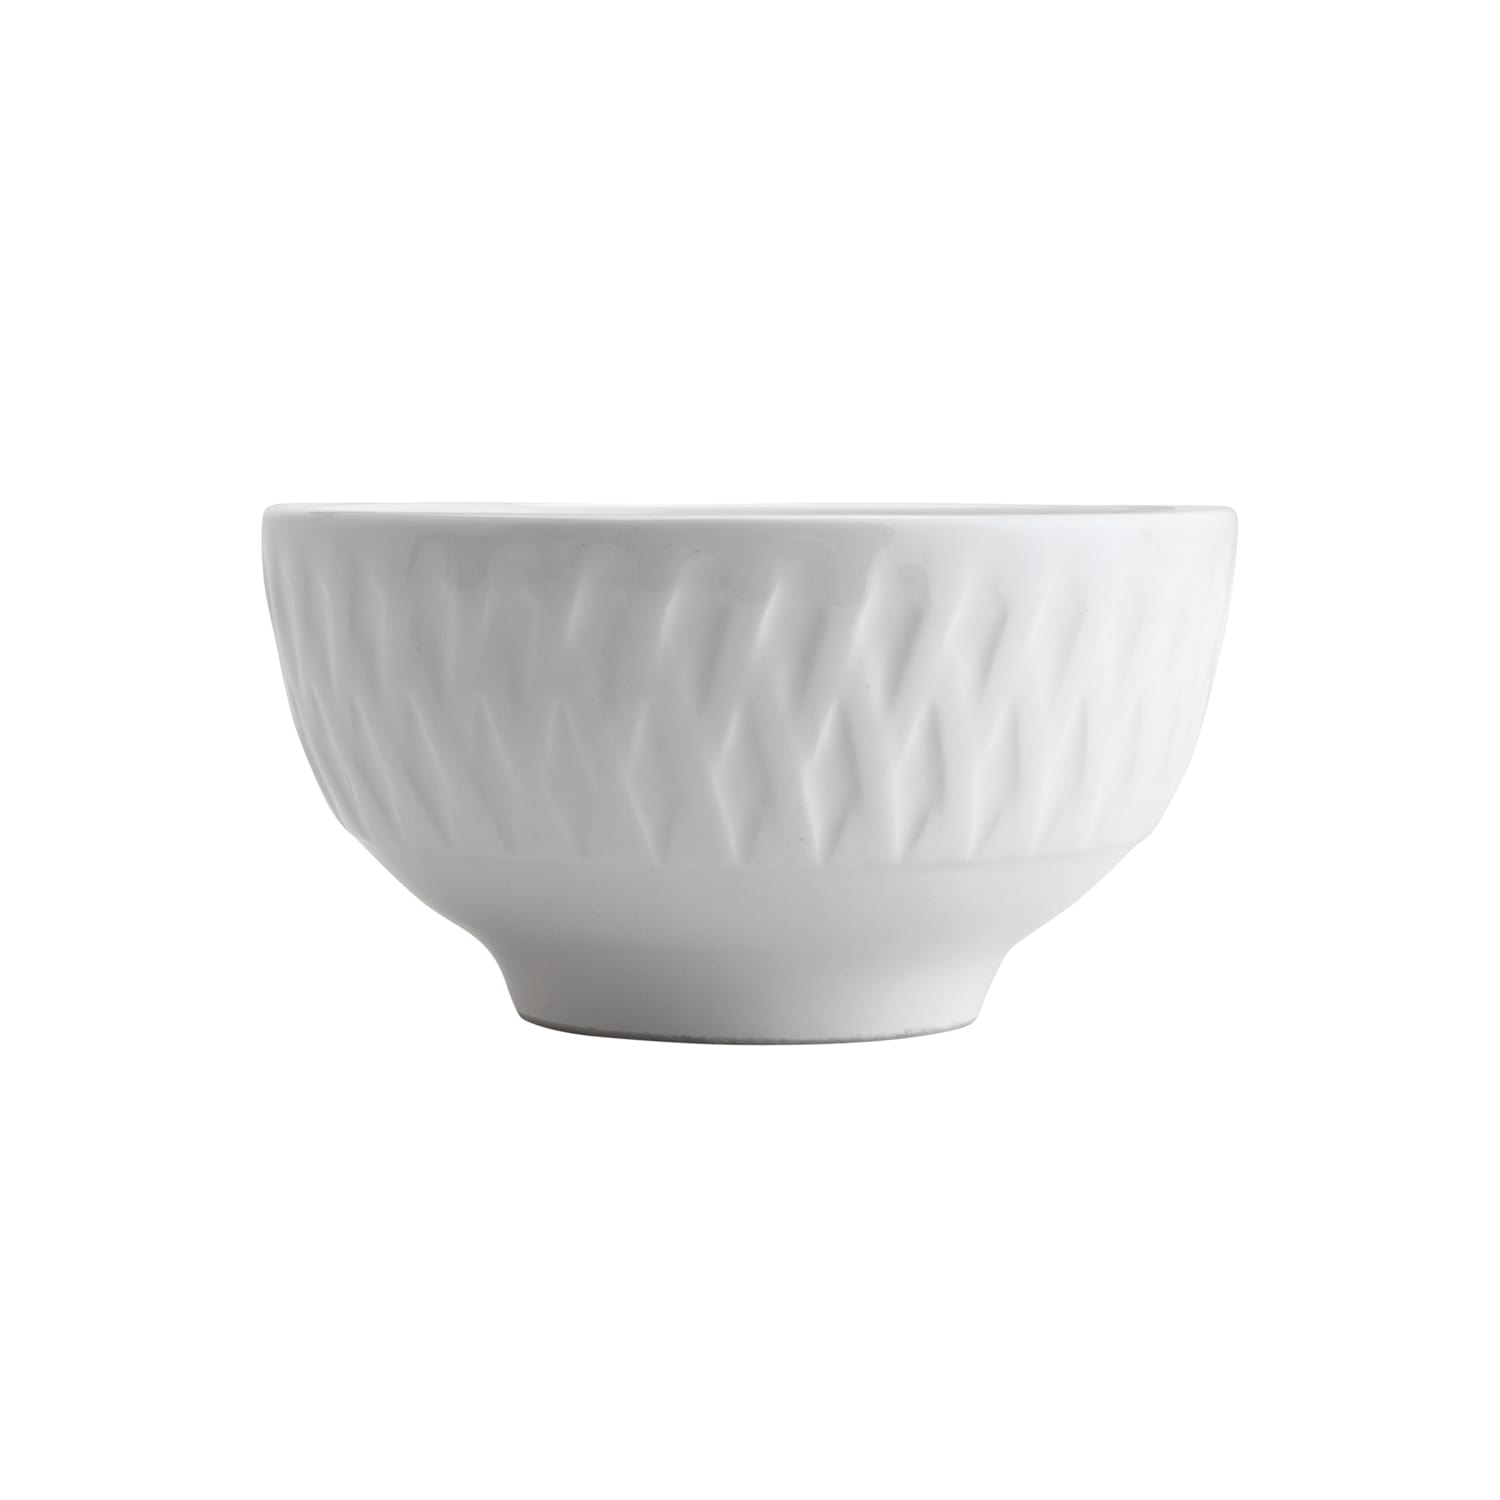  Bowl Tigela Cumbuca de Porcelana Balloon Branco 12 x 6,5 cm